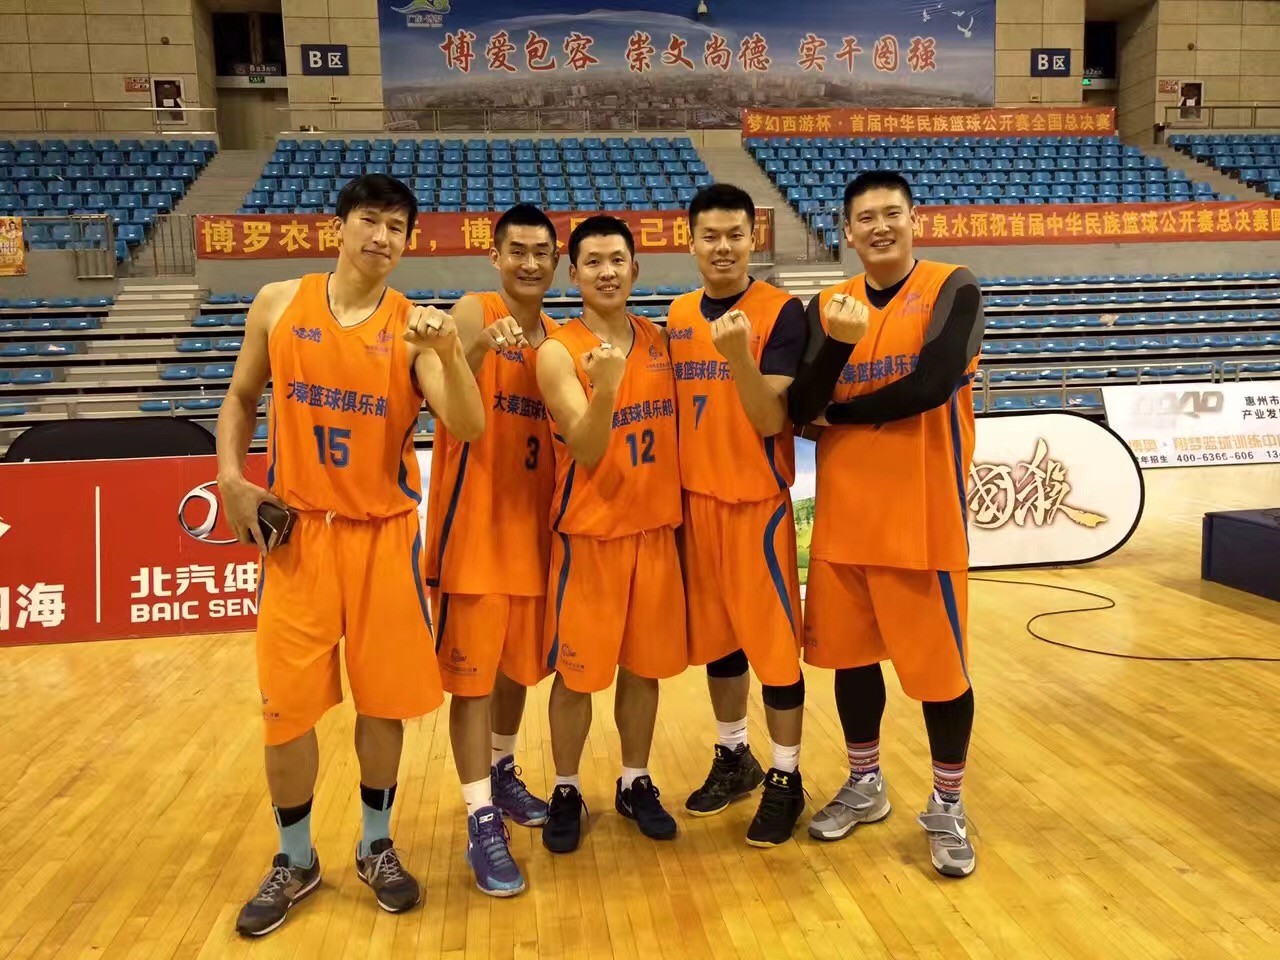 不仅如此,这伙人 2016年曲帅代表南宁广西大秦篮球俱乐部队 参加首届